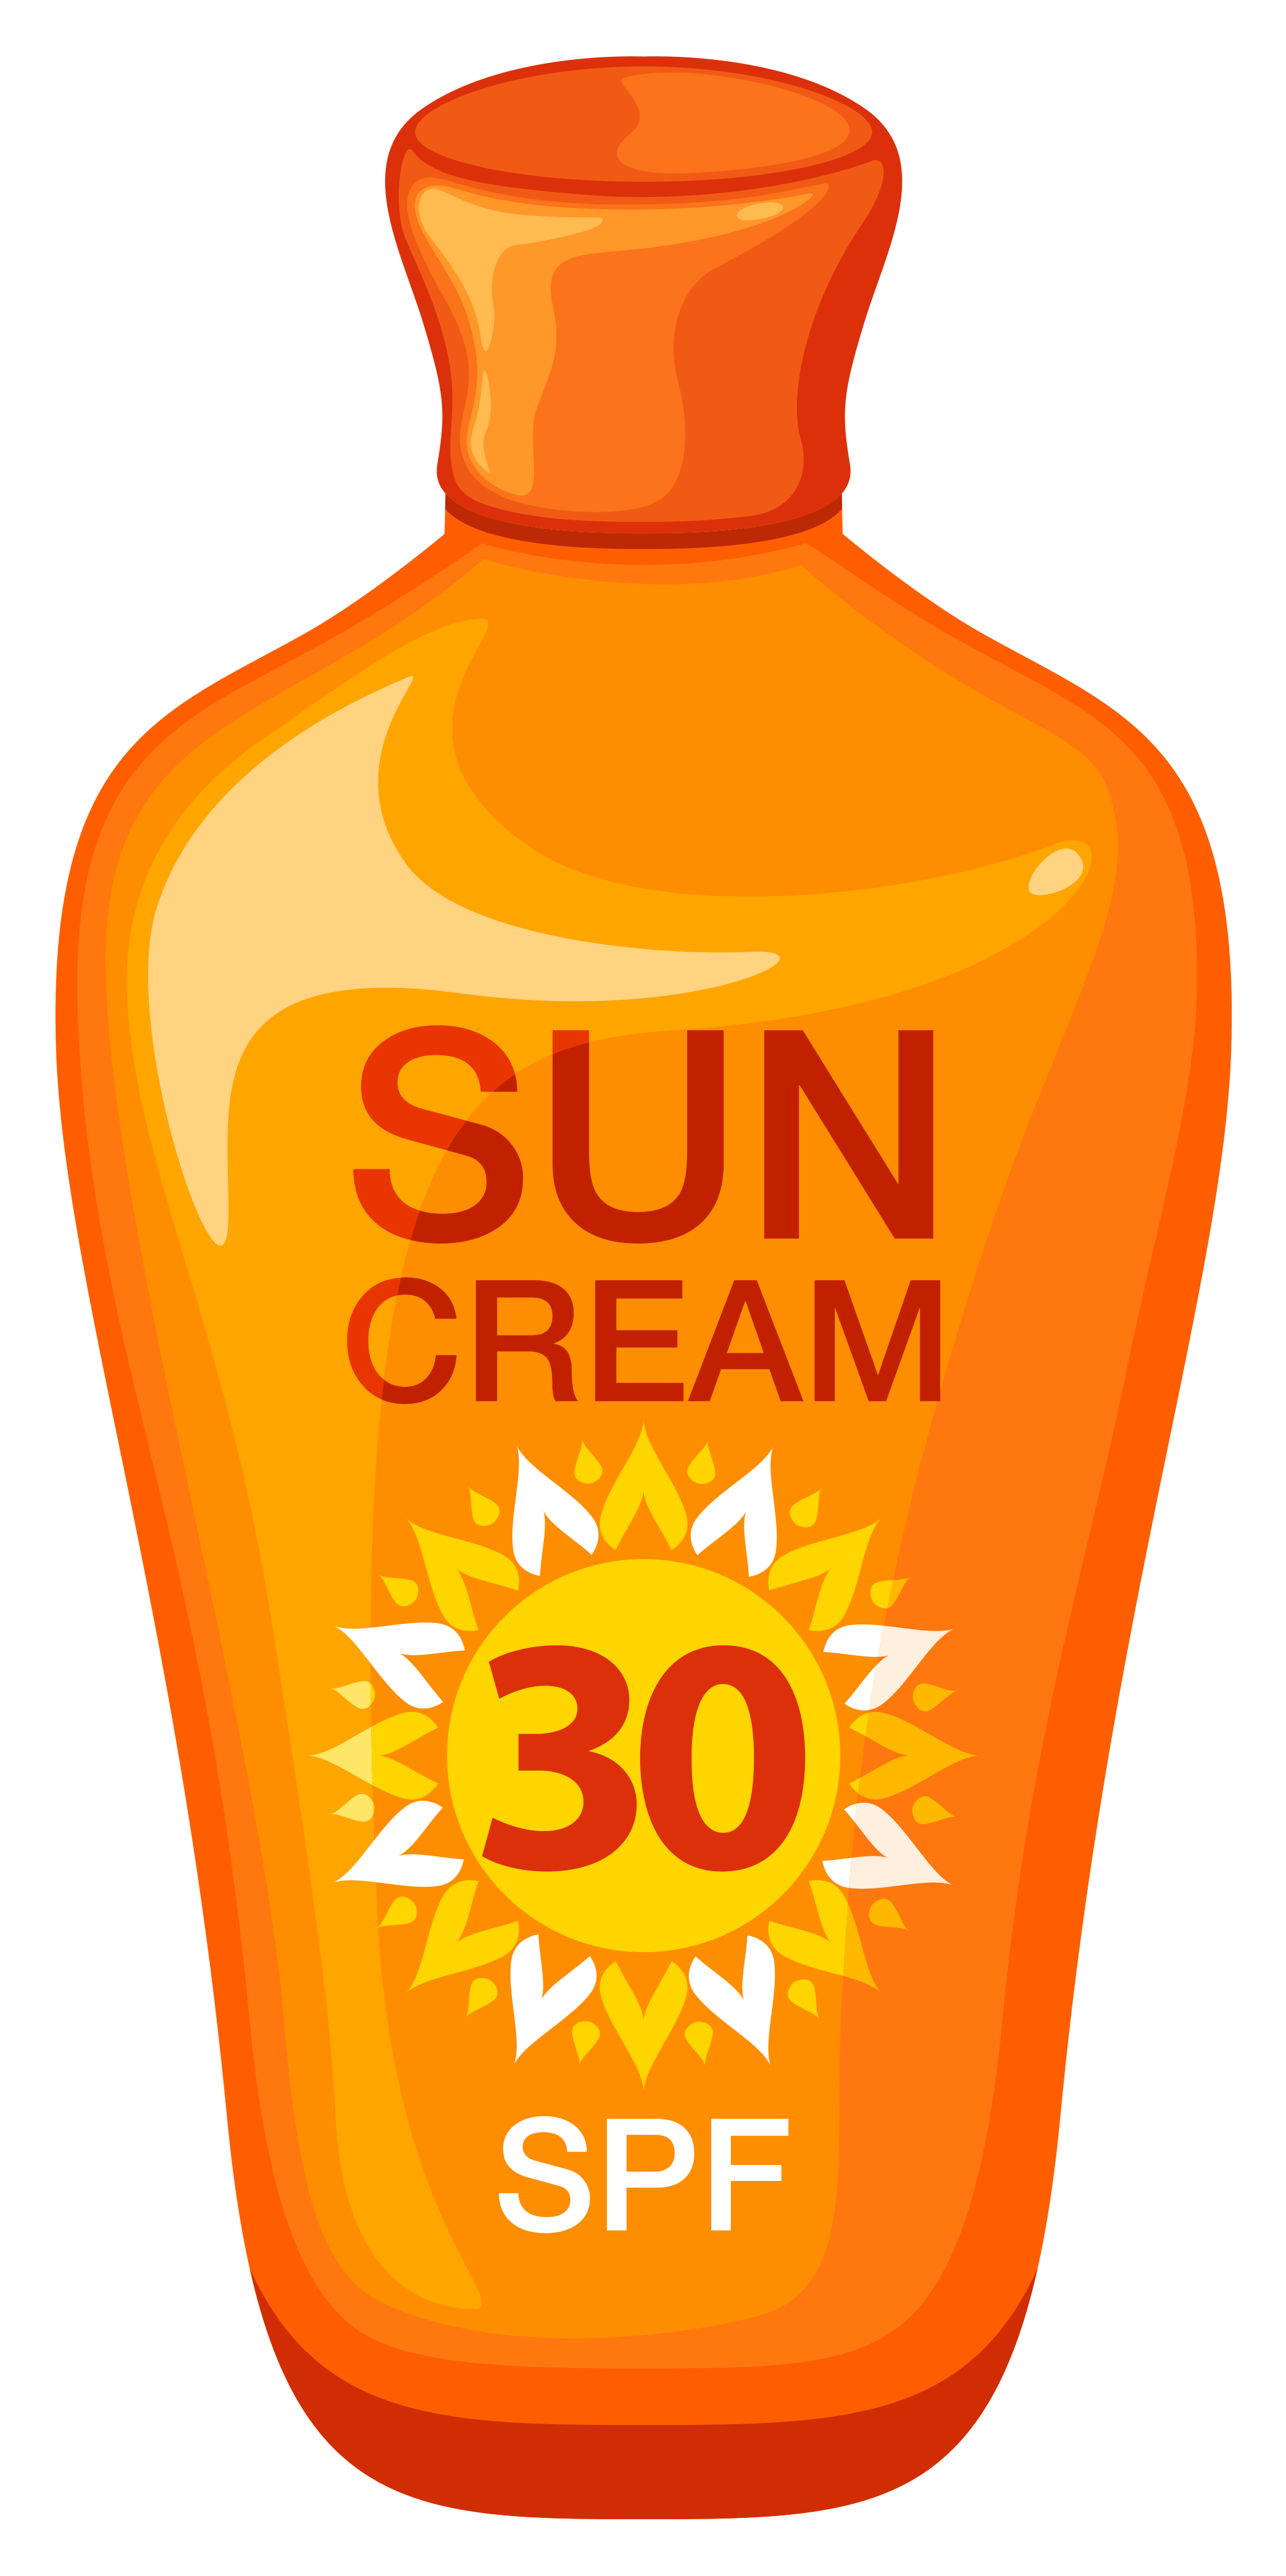 Clip art of 30 SPF sunscreen